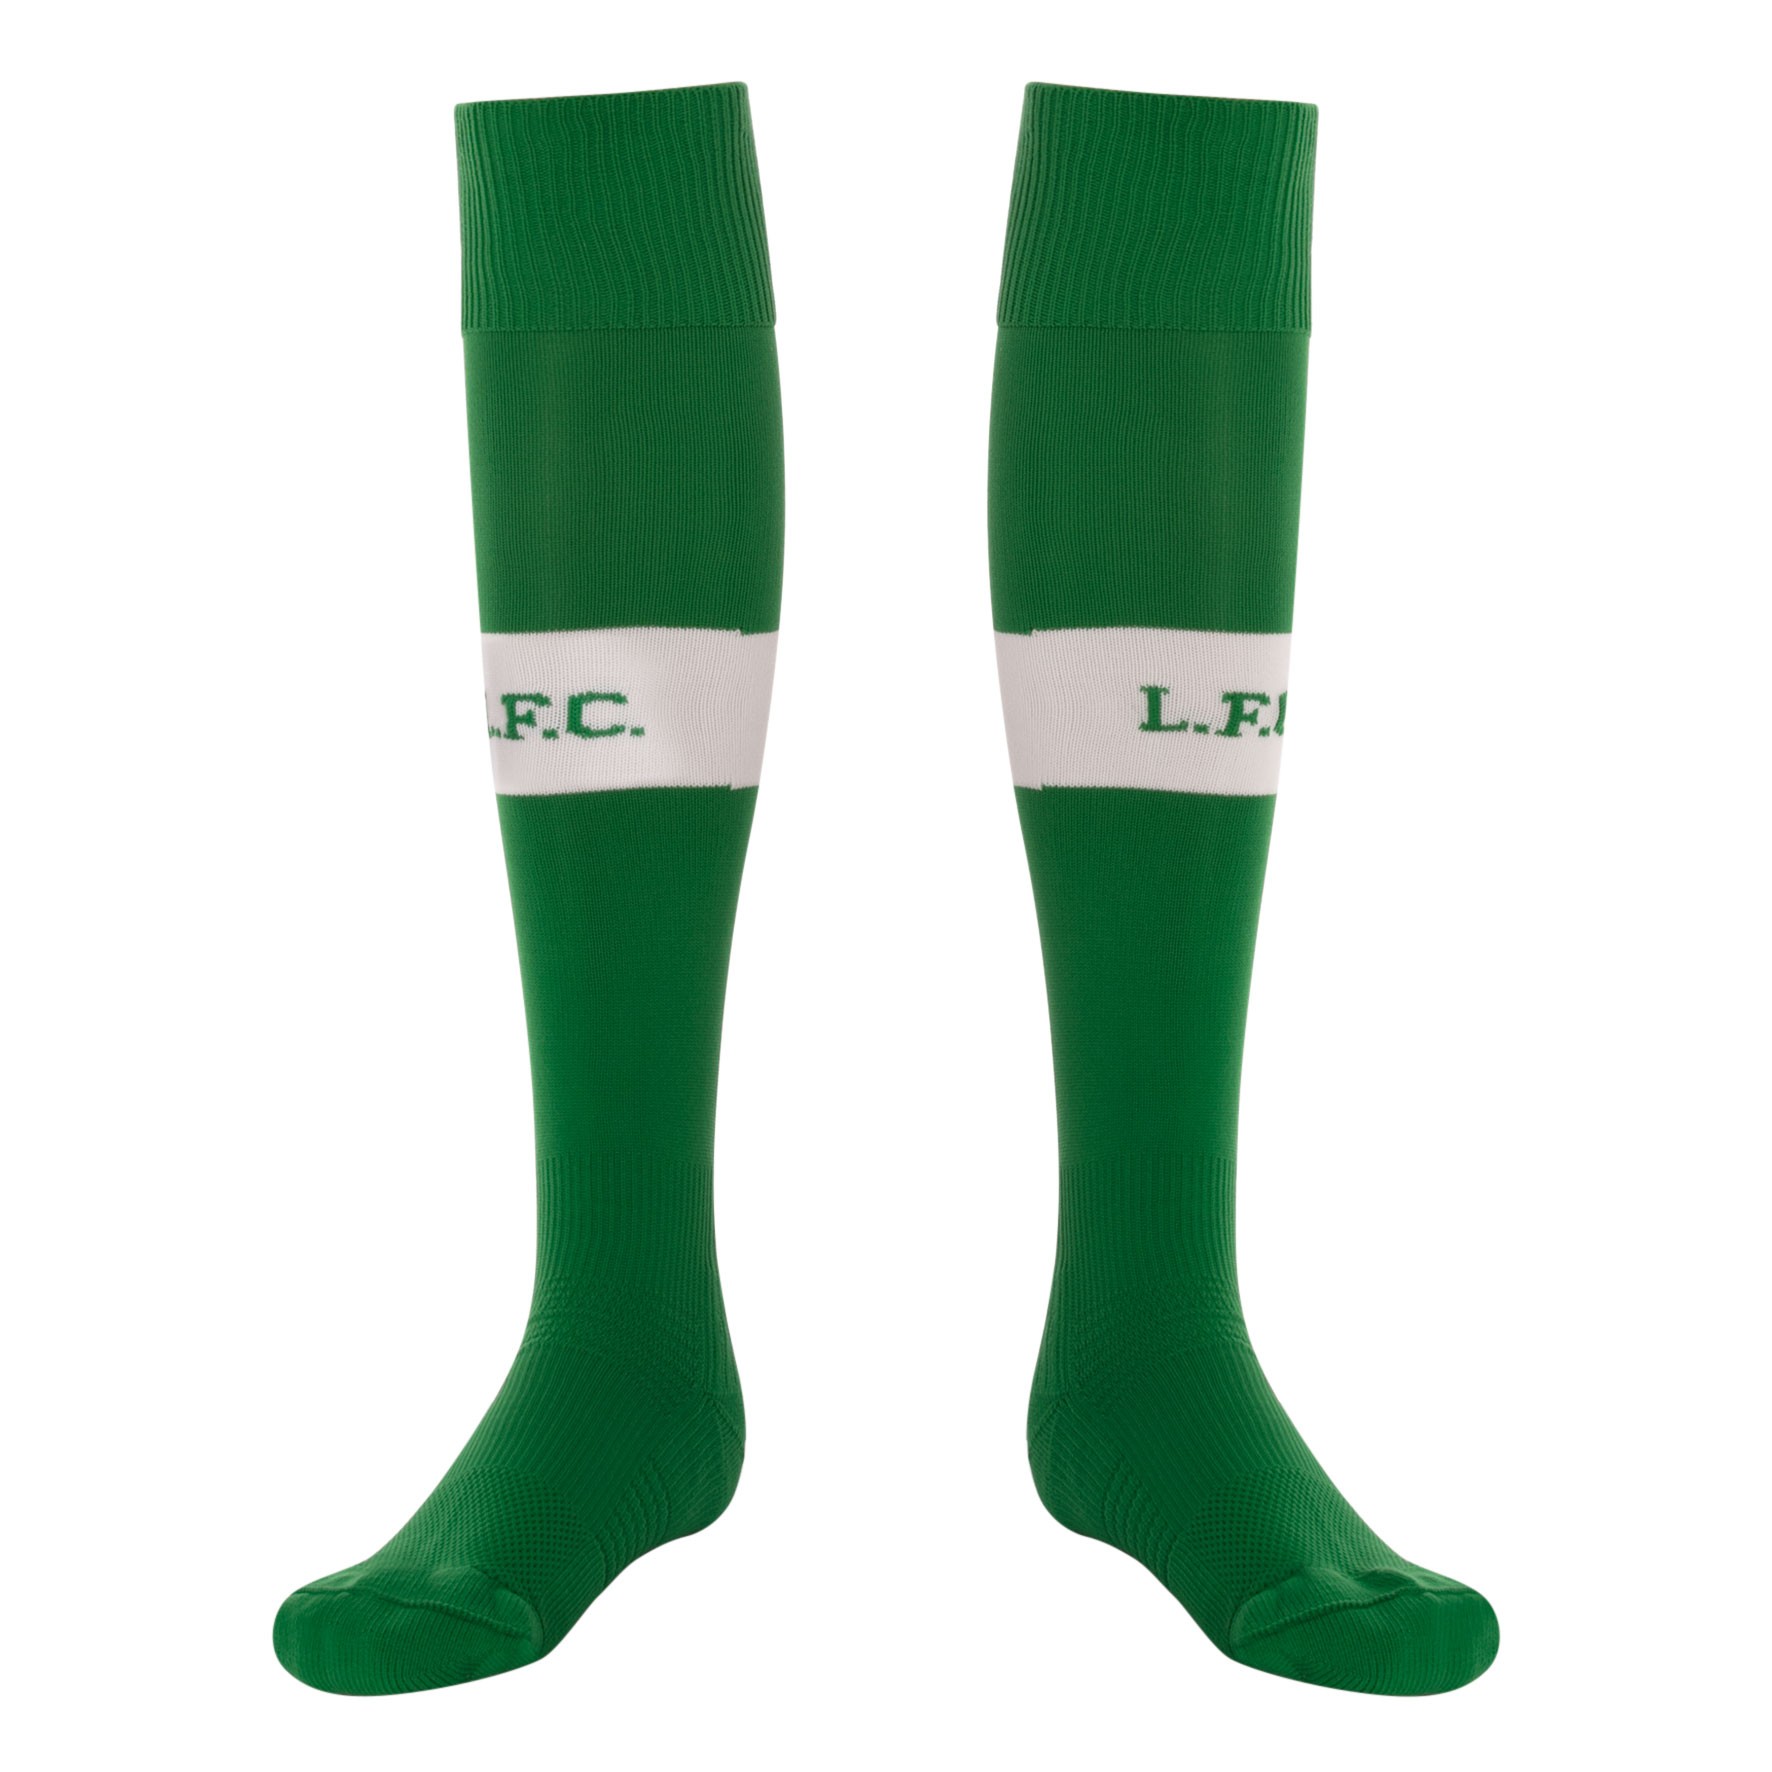 LFC Kids Home Goalkeeper Socks 17/18